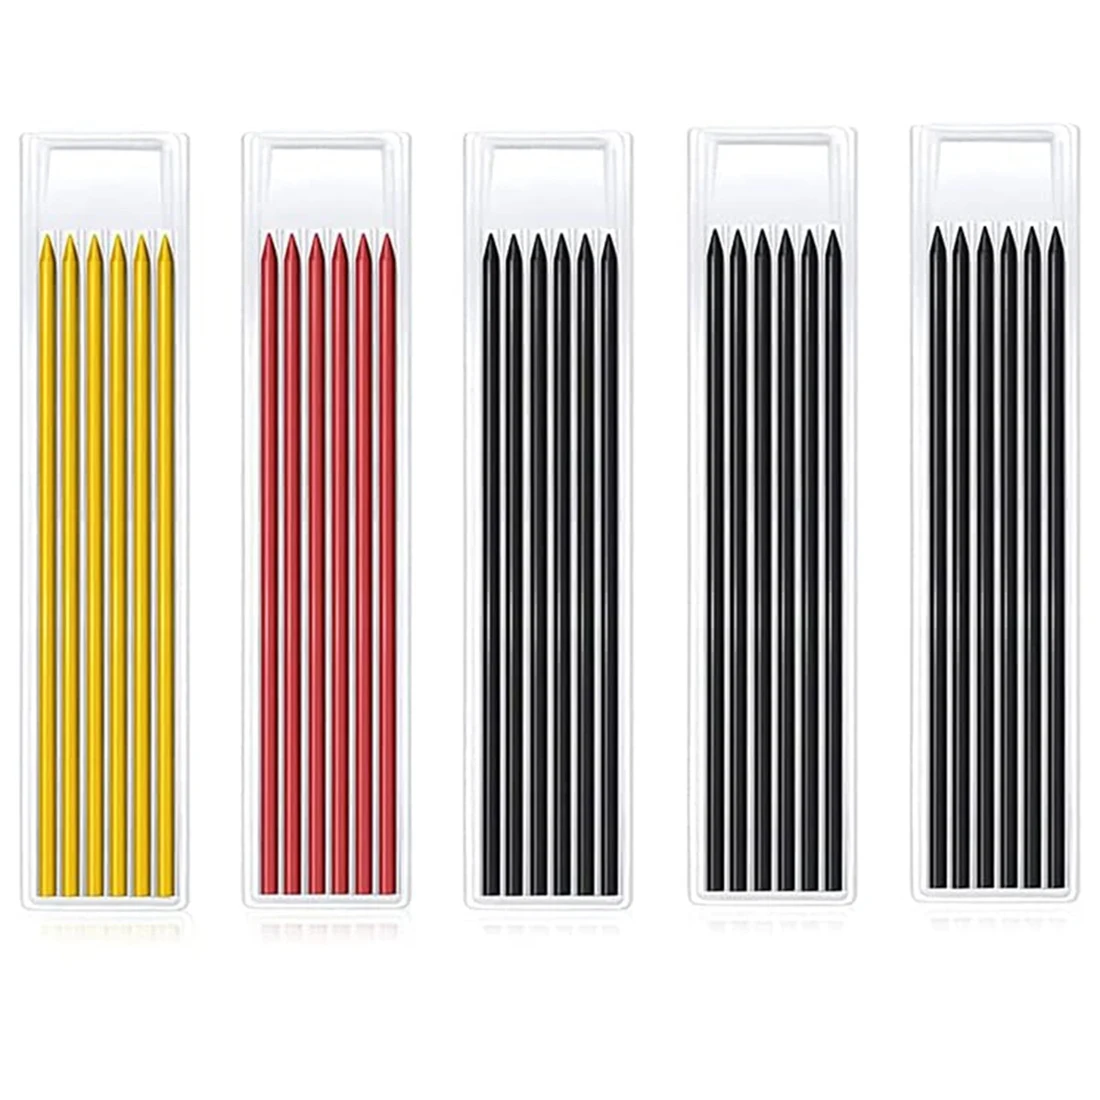 

30PCS 2.8 mm Pencil Refills, Solid Deep Hole Pencil Refills for Carpenter Mark Pencils, Mechanical Pencil Replacements